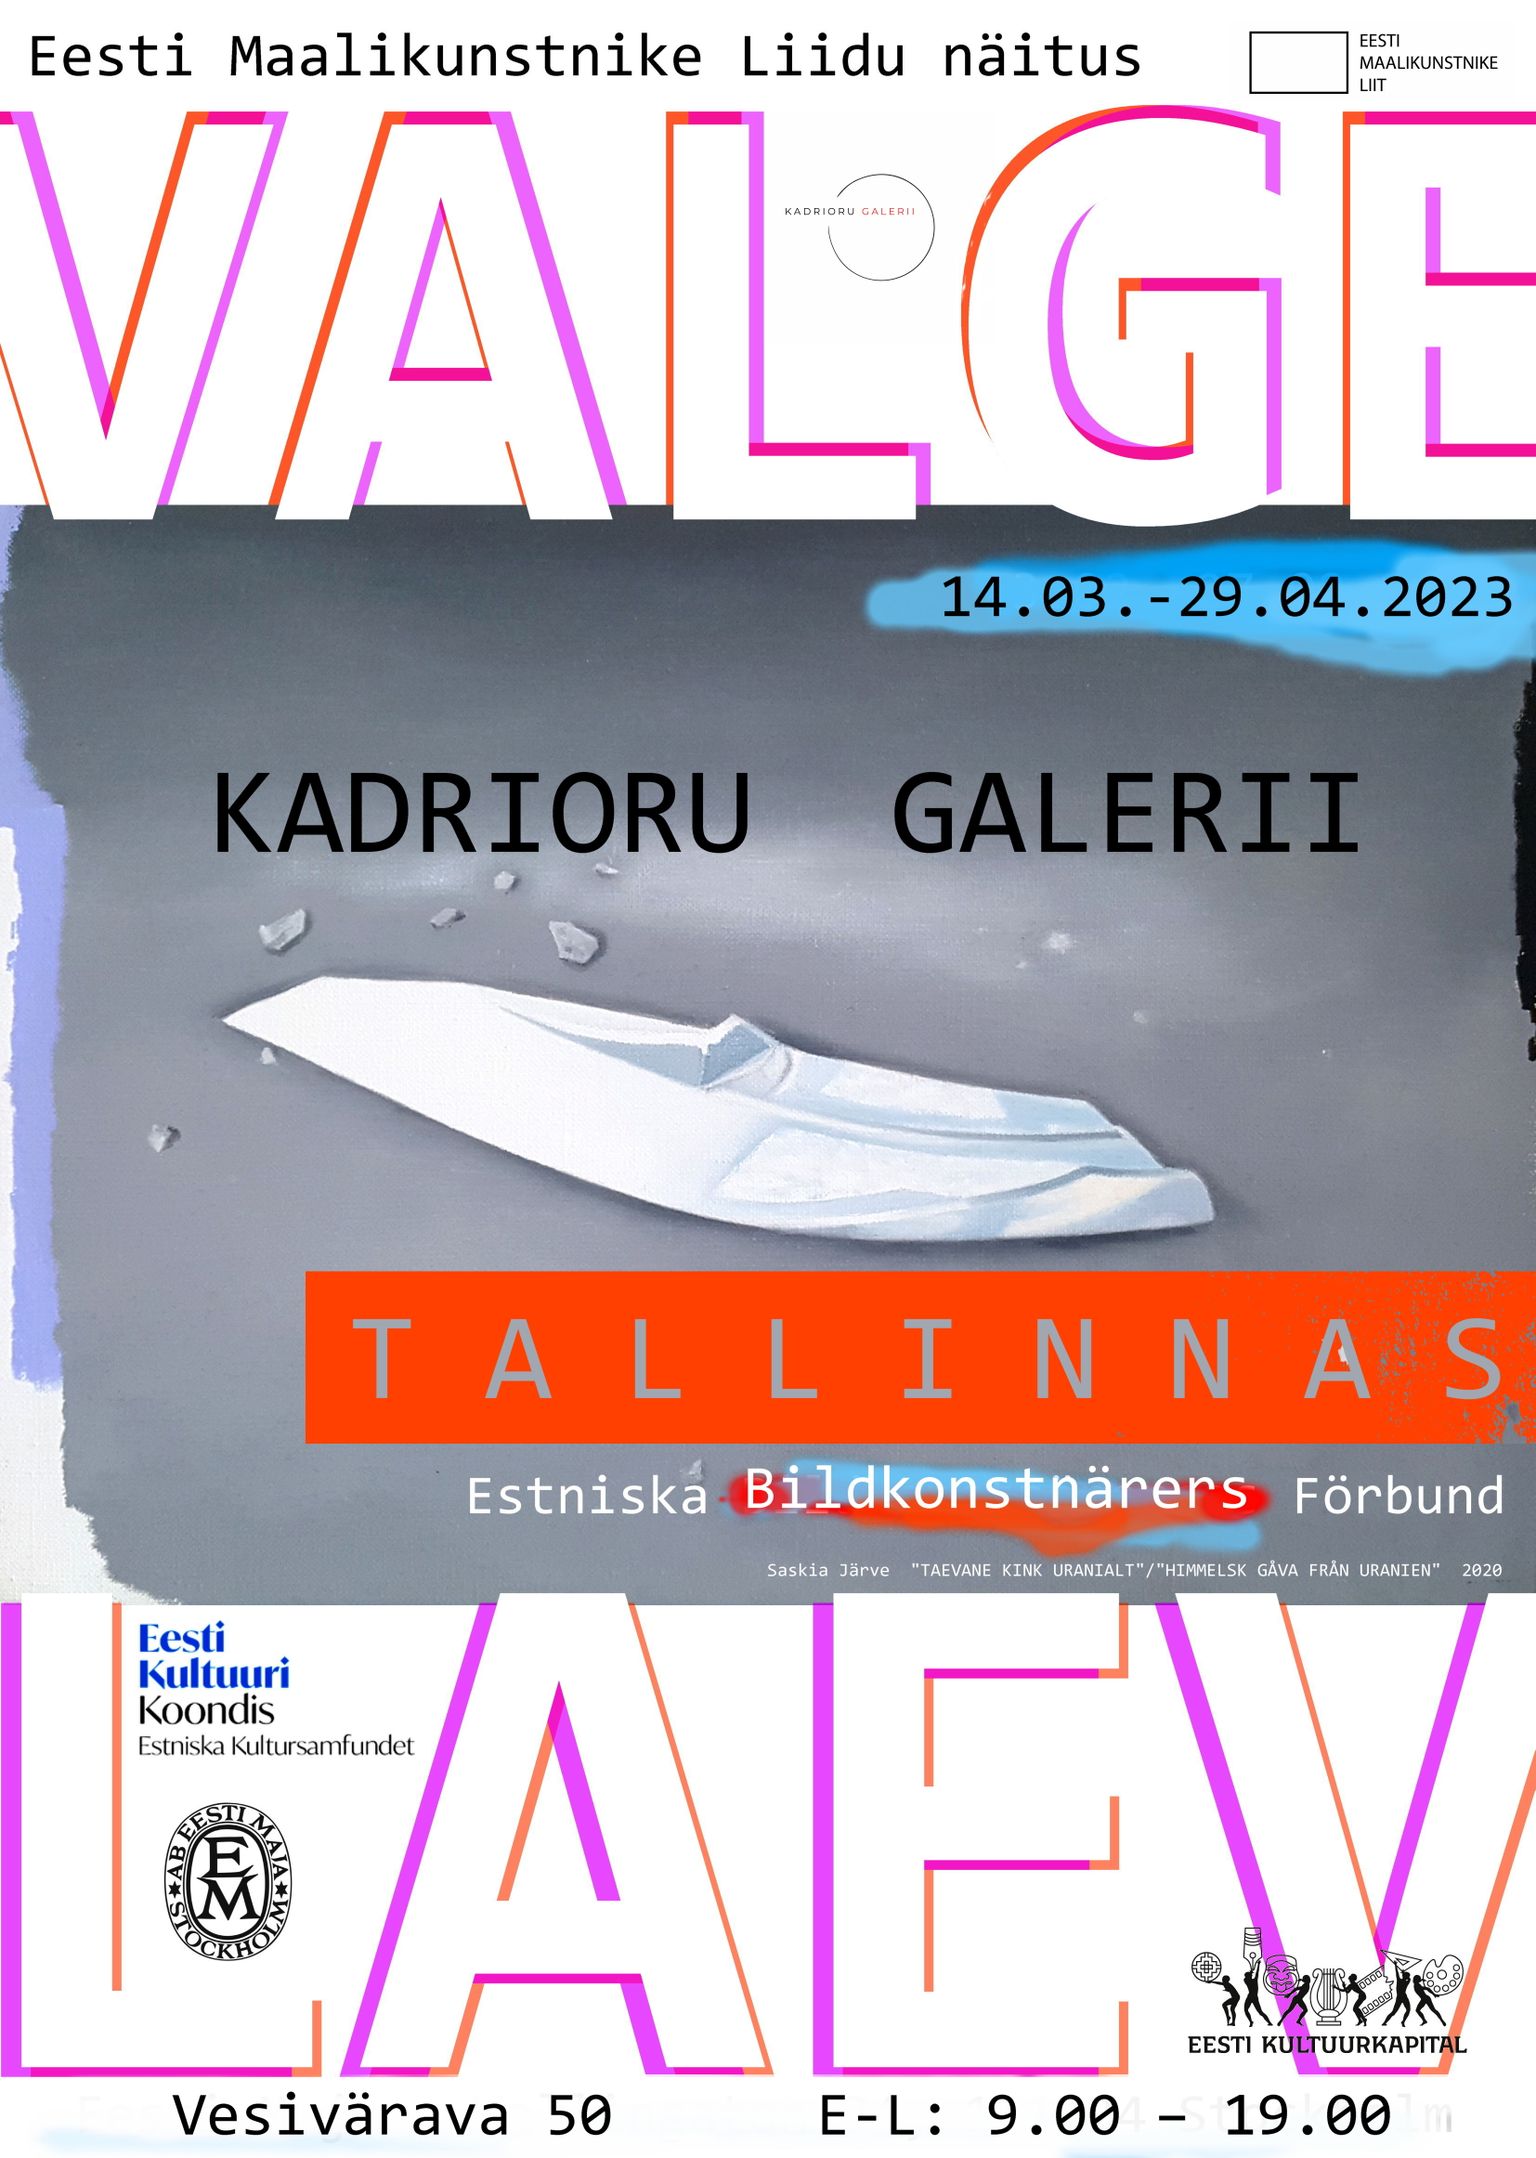 Eesti Maalikunstnike Liidu ülevaatlik näitus «Valge Laev II».